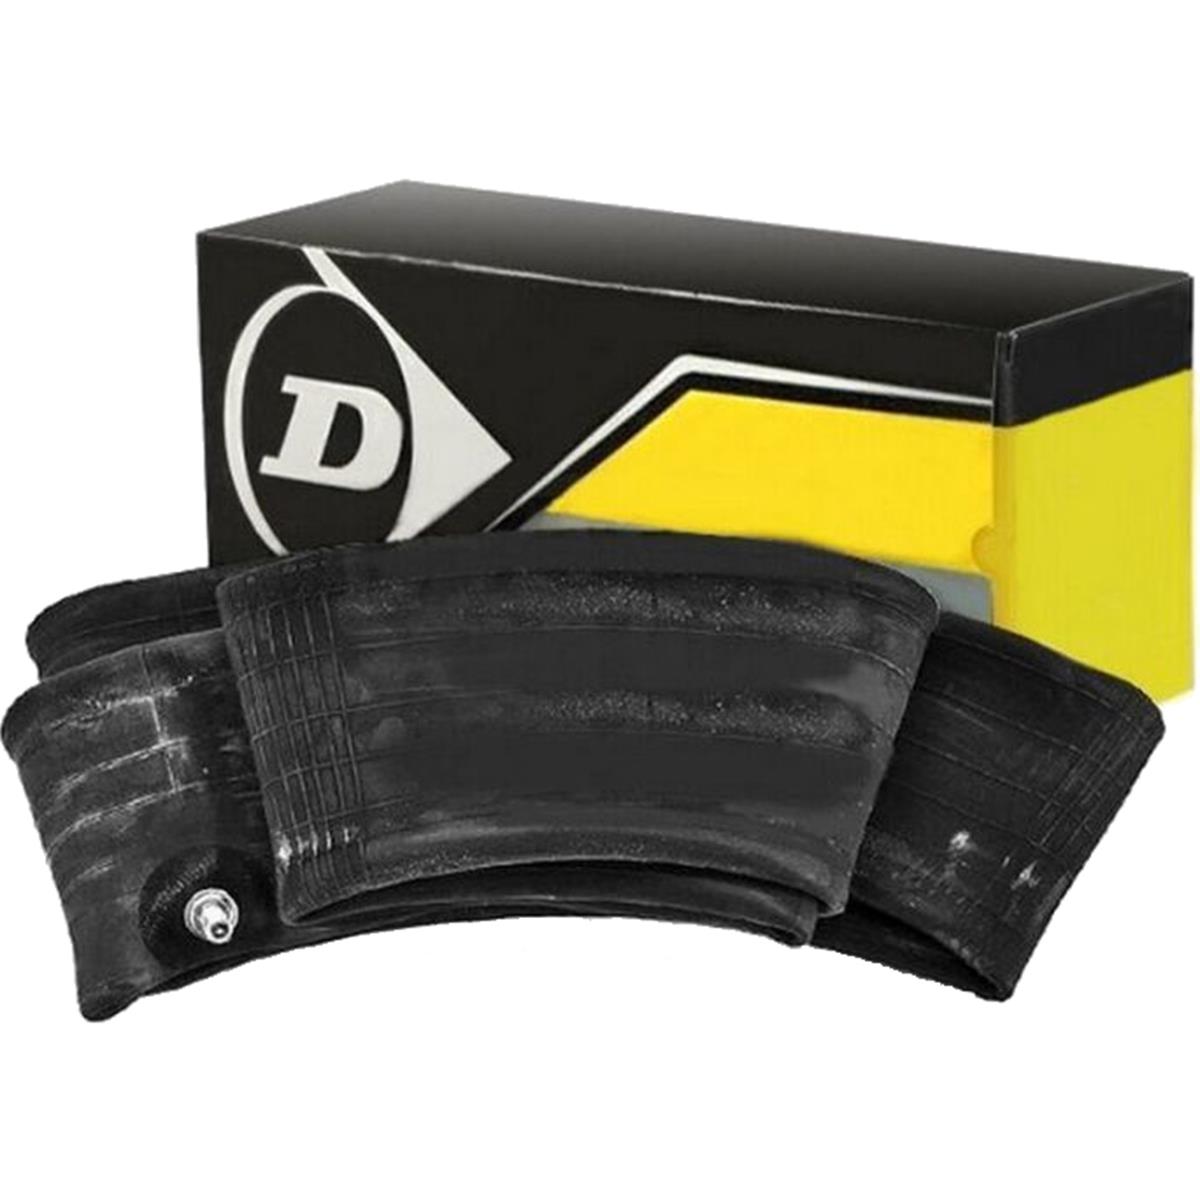 Dunlop Tube  110:120/100-18, 120/90-18, SH TR4 NR